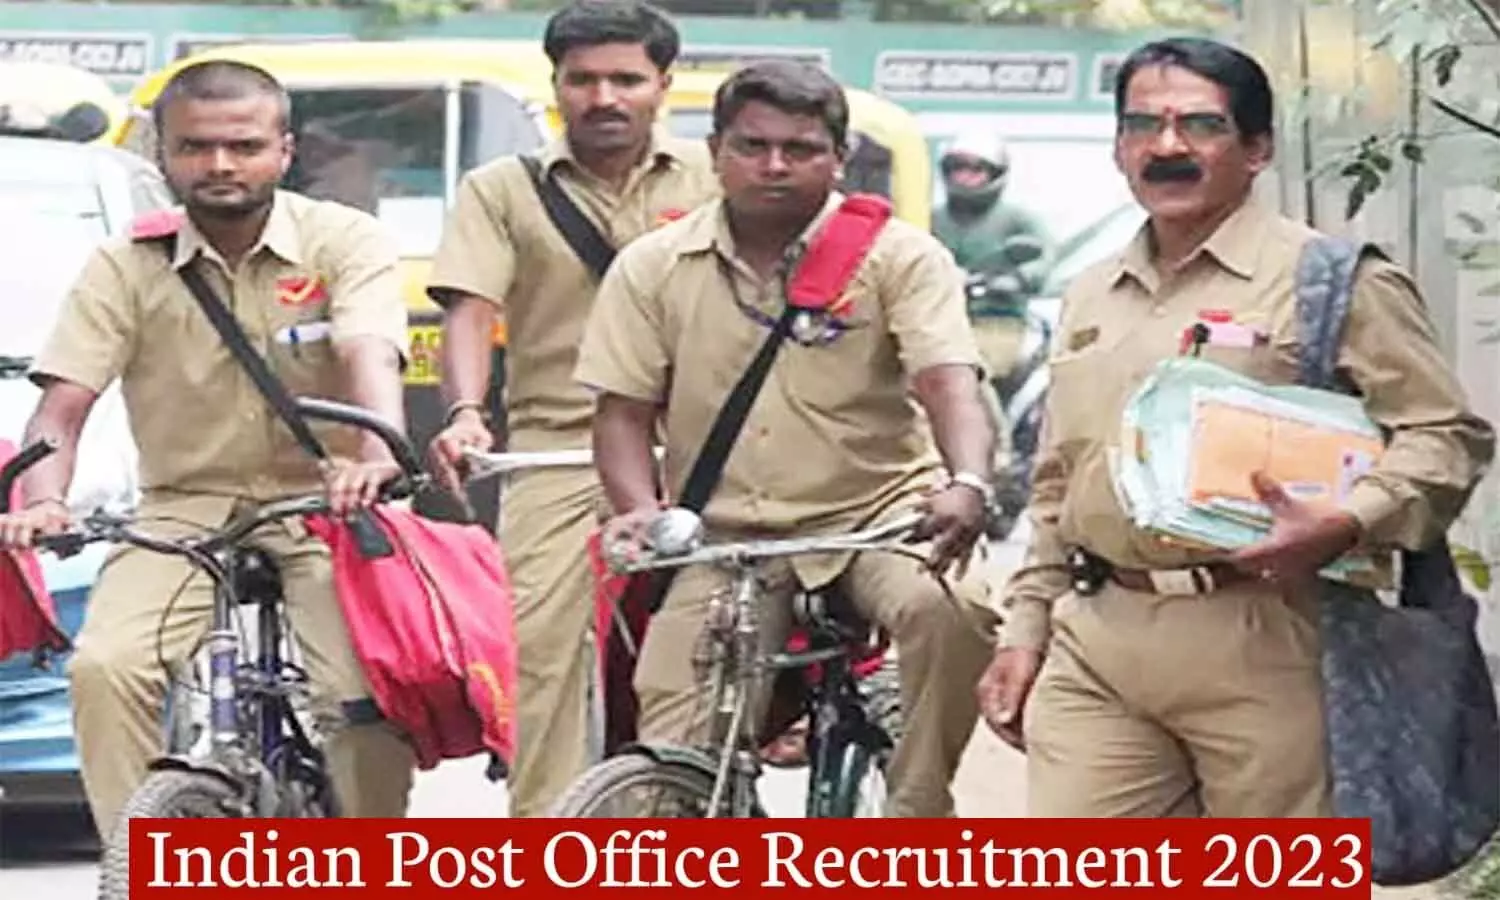 Indian Post Office Recruitment 2023: भारतीय डाक विभाग में 12 हजार से अधिक पदों पर निकली वैकेंसी, यहां पर जानिए क्वालिफिकेशन सहित अन्य डिटेल्स